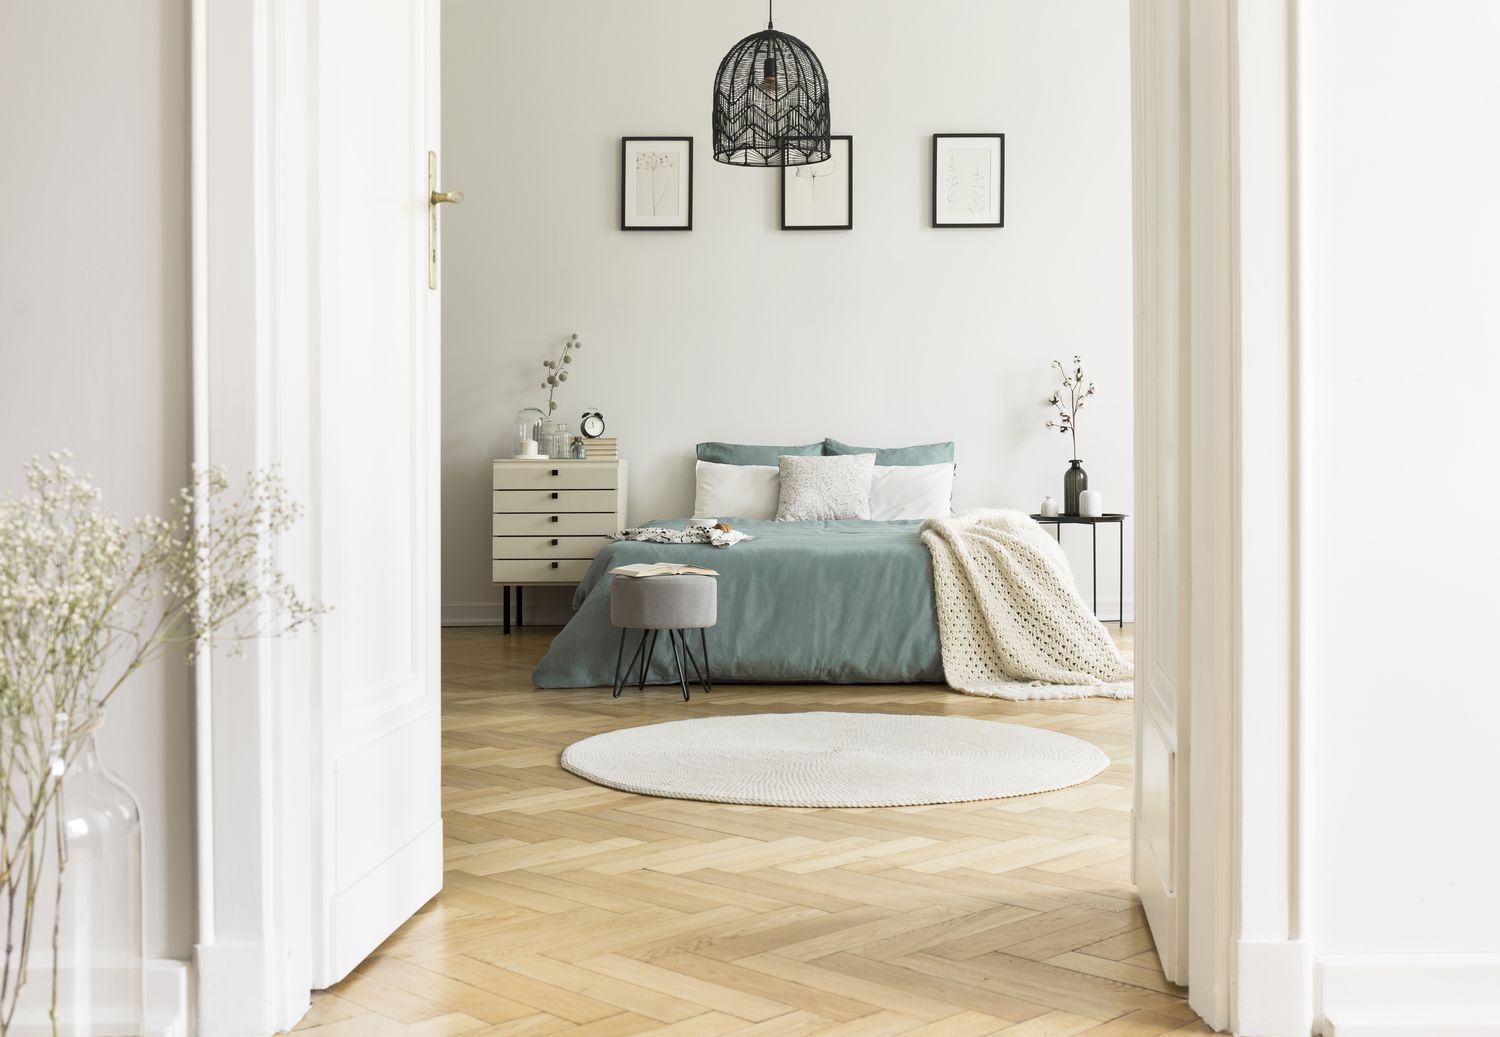 Foto real del interior de un dormitorio blanco con alfombra redonda, cama king-size con almohadas y sábanas en tonos pastel, carteles sencillos y parqué en espiga